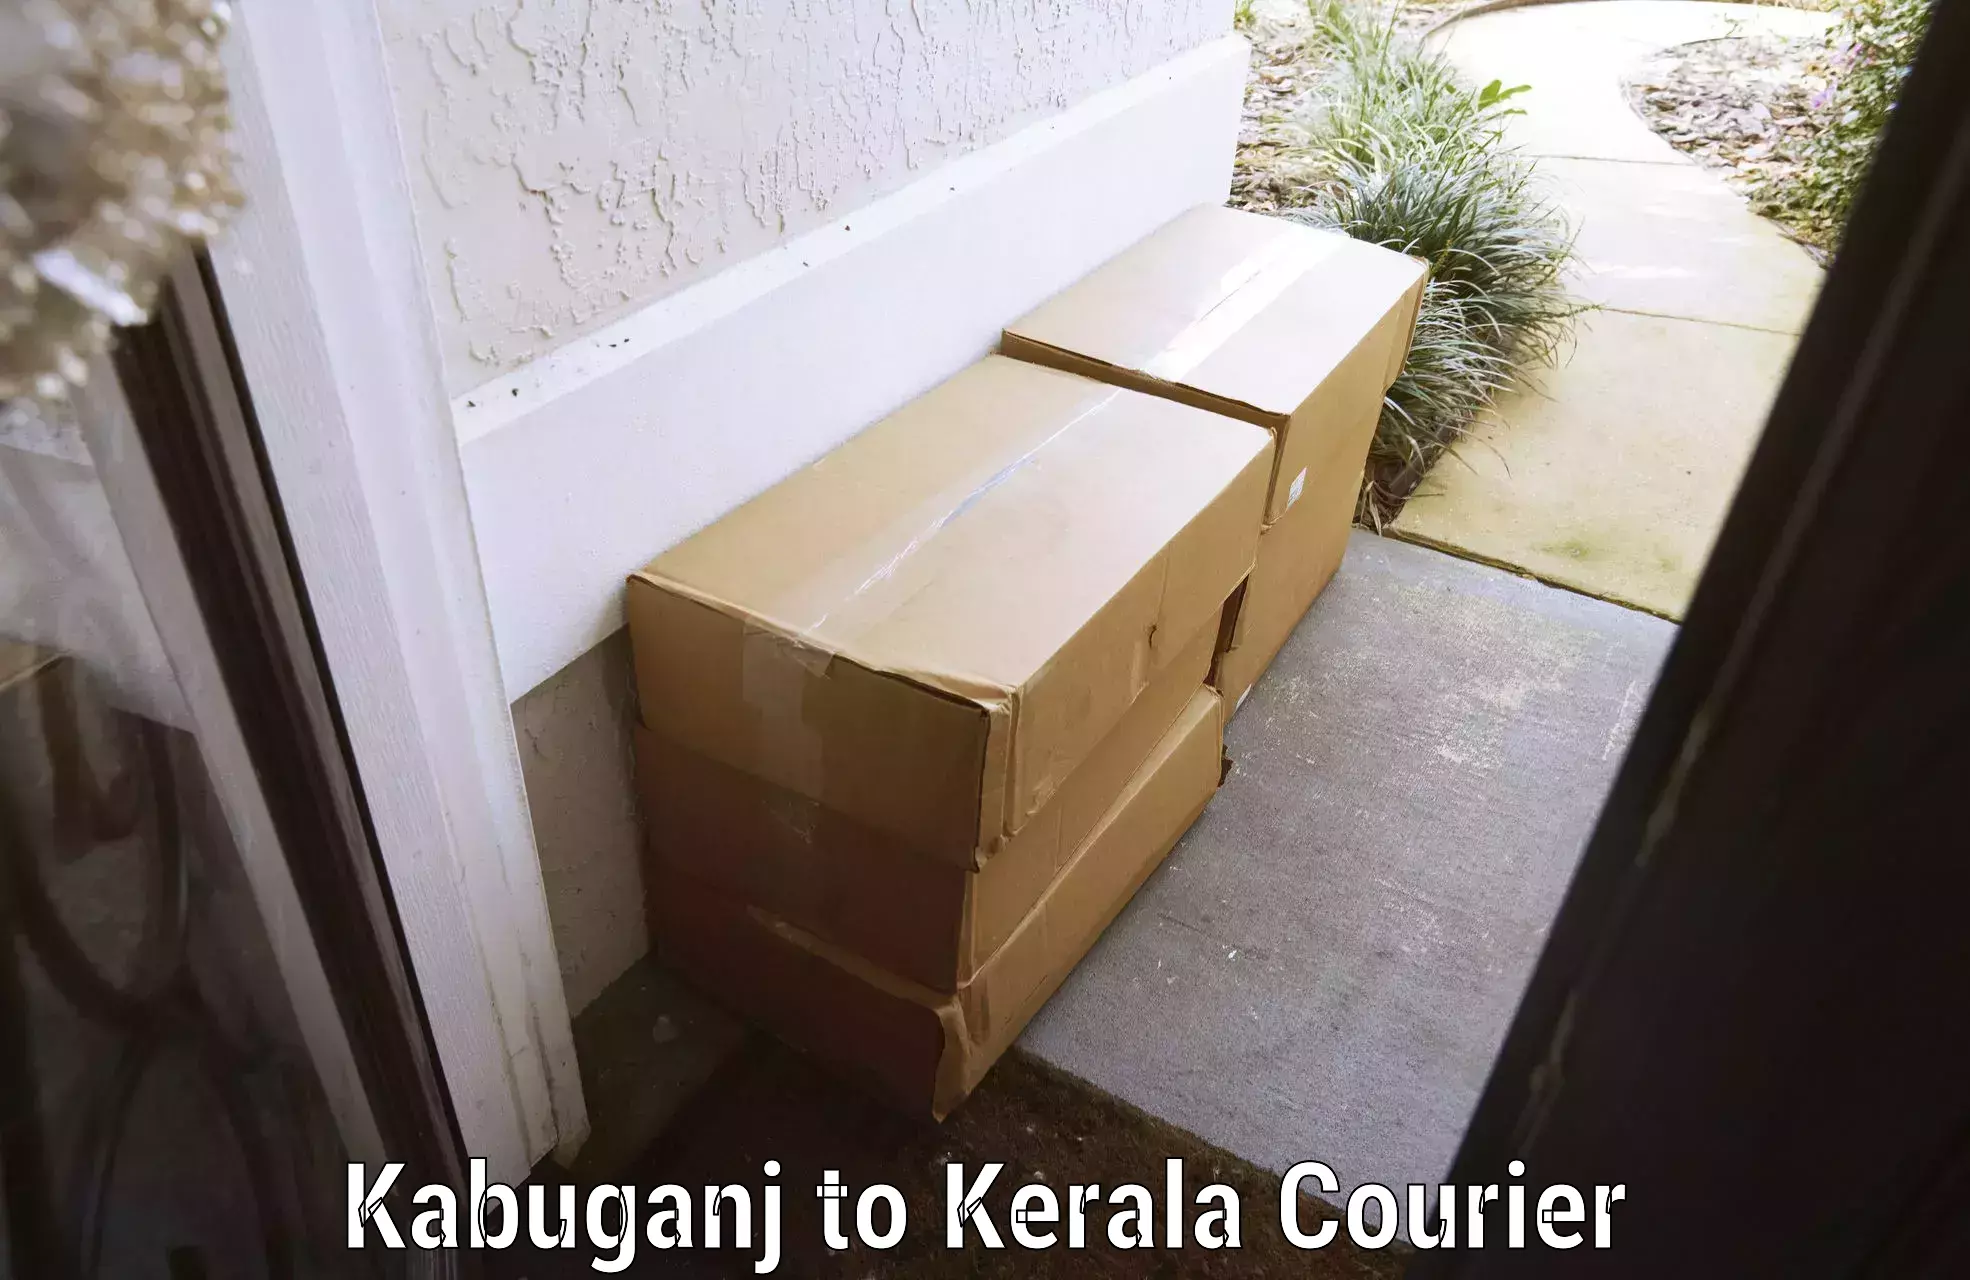 Luggage delivery estimate Kabuganj to Kakkayam